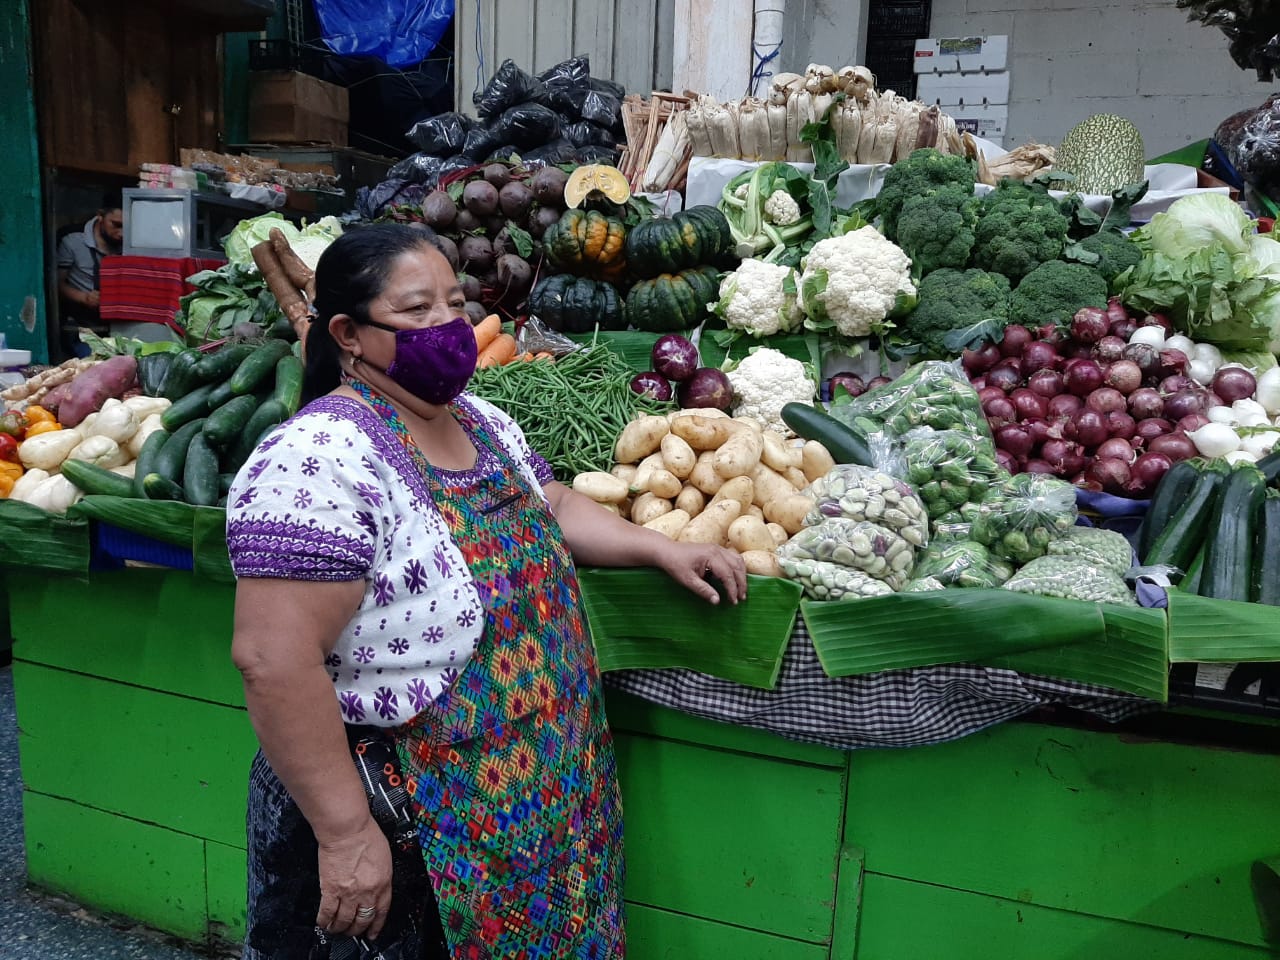 La vendedoras de frutas y verduras mencionan que no han visto a la clientela que todos los años las visitan para esta época. (Foto Prensa Libre: Andrea Domínguez)